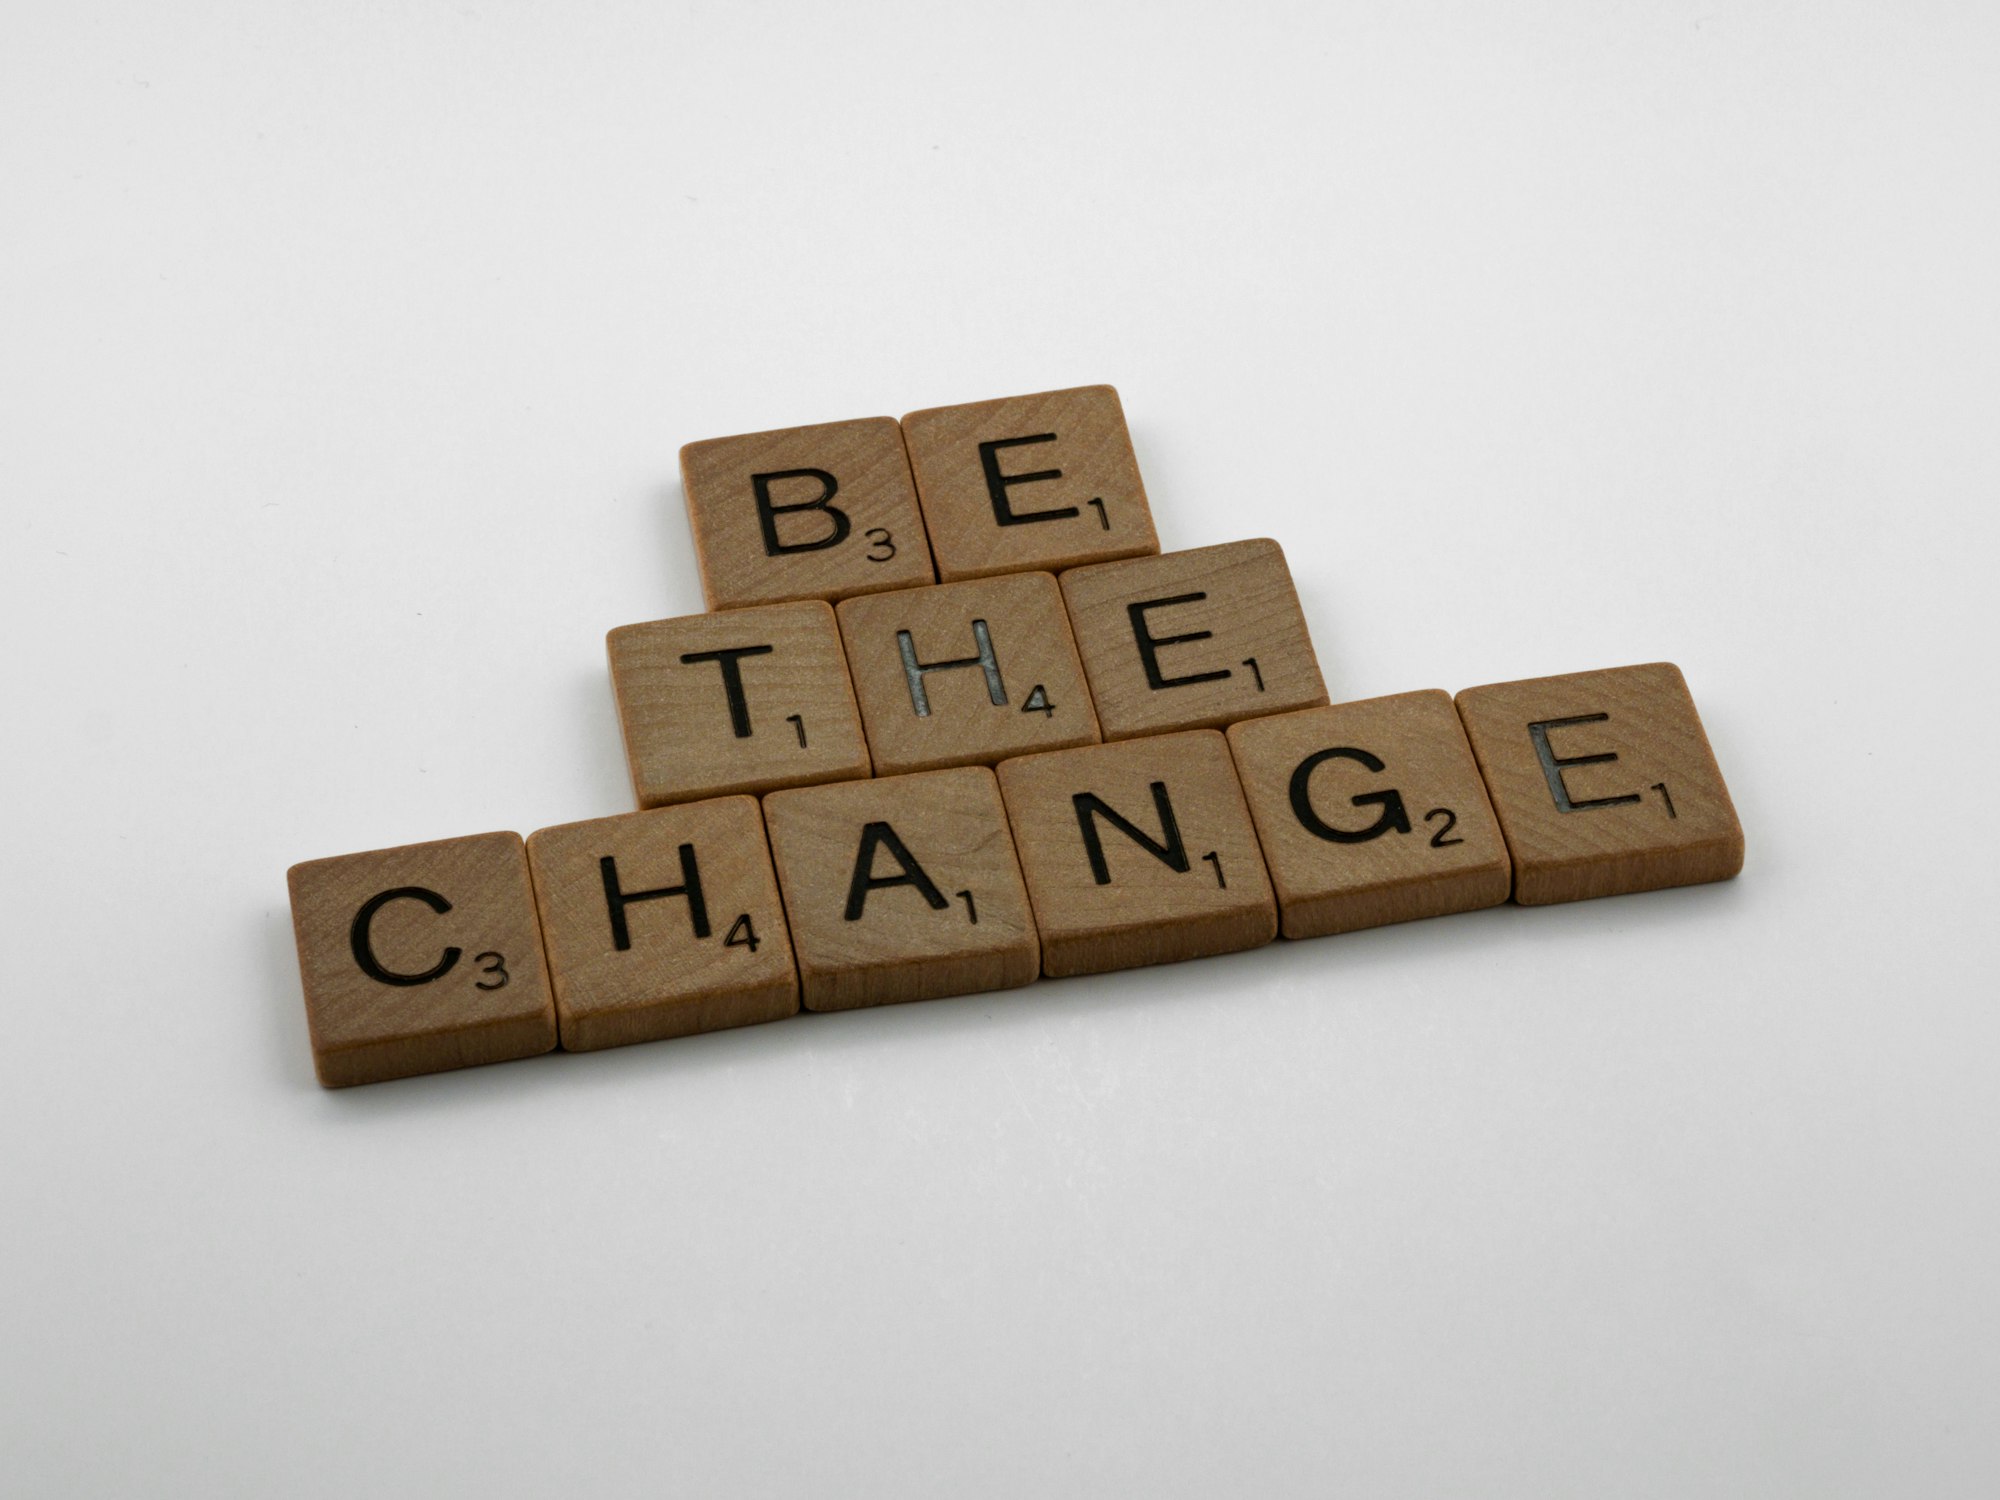 Scrabble Buchstaben die ergeben "Be the change"